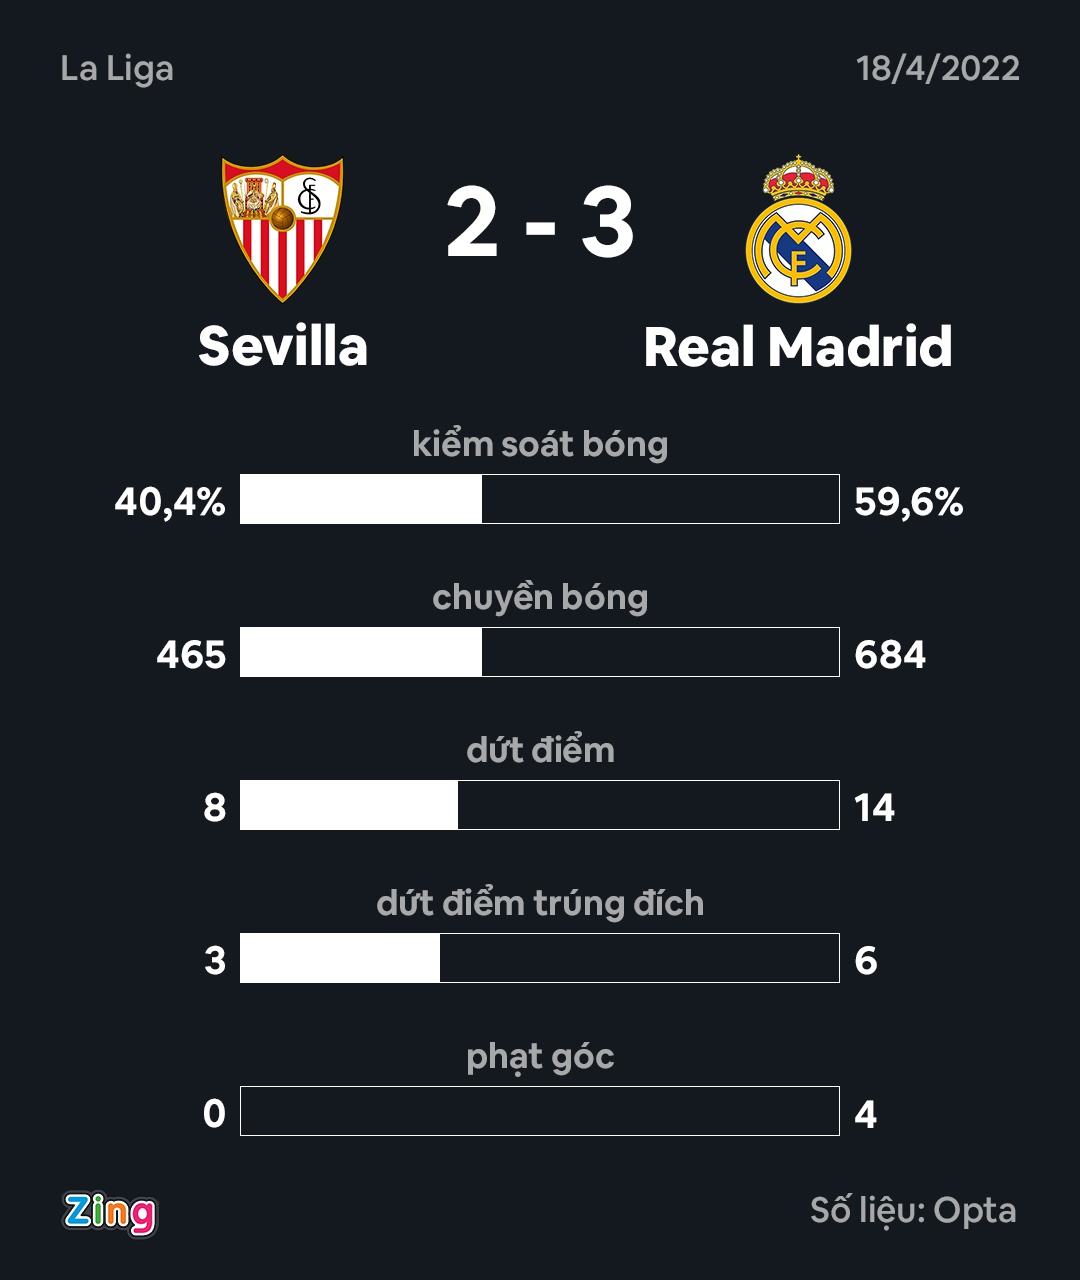 Bị dẫn 2 bàn, Real Madrid thắng ngược Sevilla ở phút 90+2 - Ảnh 4.